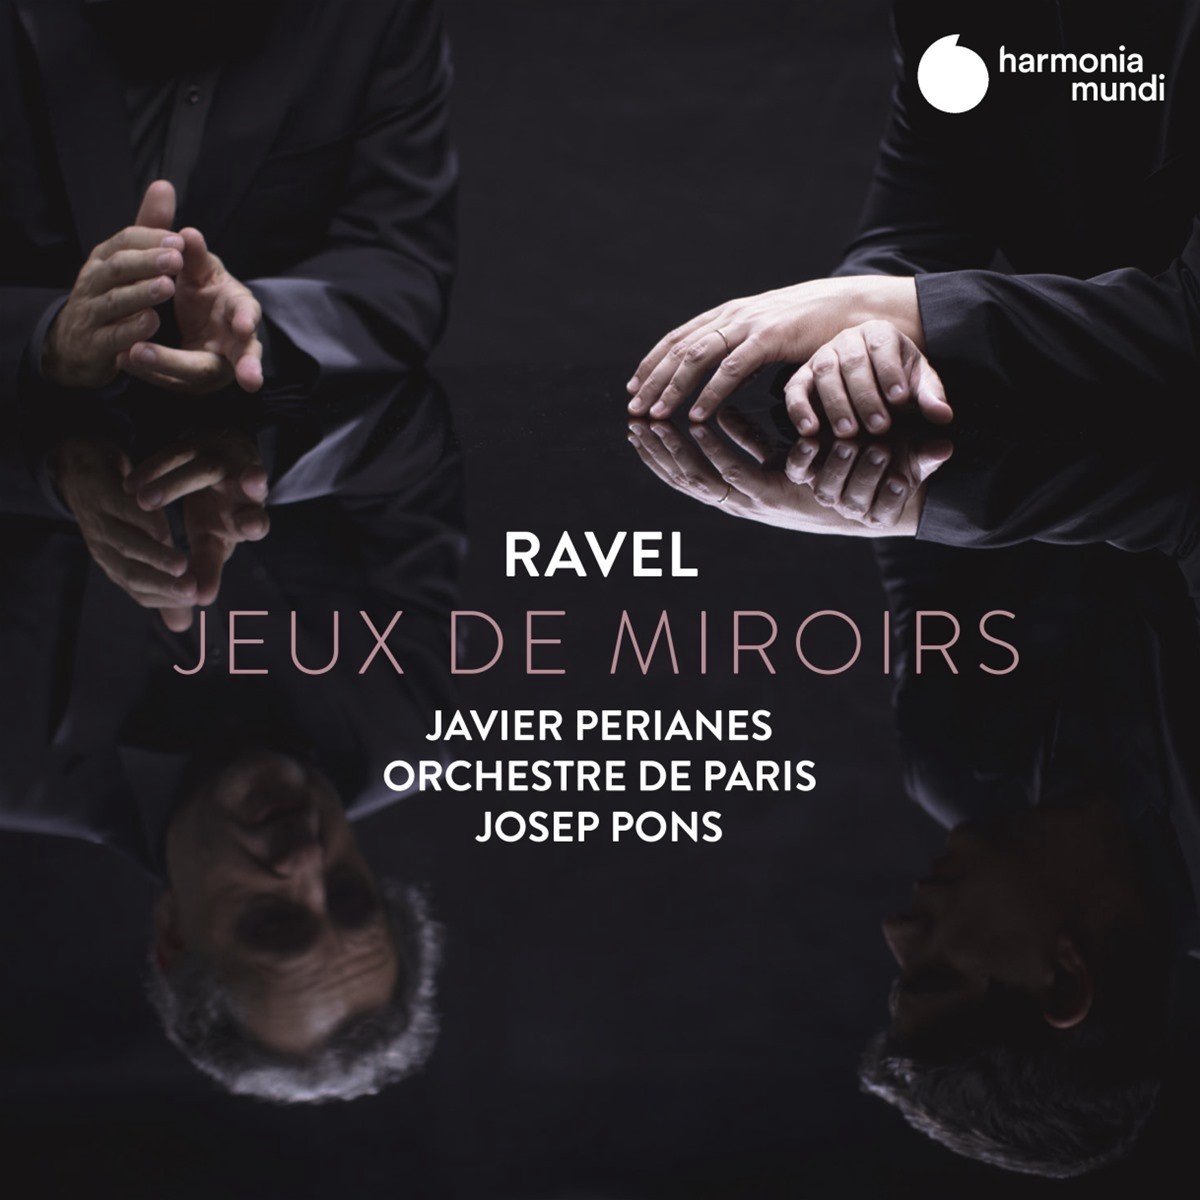 Ravel: Jeux de miroirs | Maurice Ravel, Orchestre de Paris, Javier Perianes